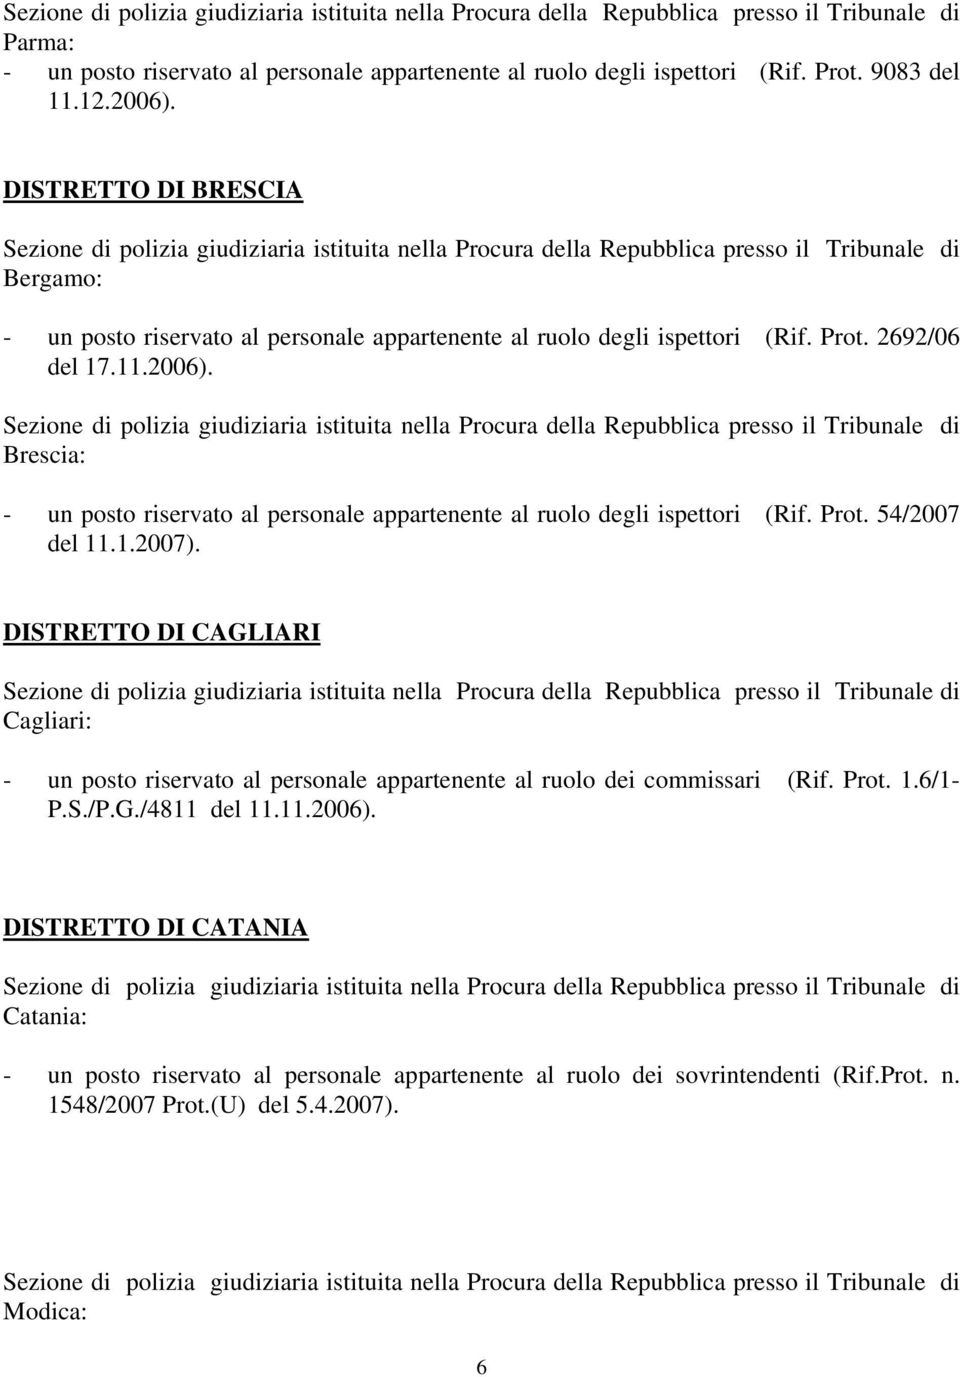 Brescia: - un posto riservato al personale appartenente al ruolo degli ispettori (Rif. Prot. 54/2007 del 11.1.2007).